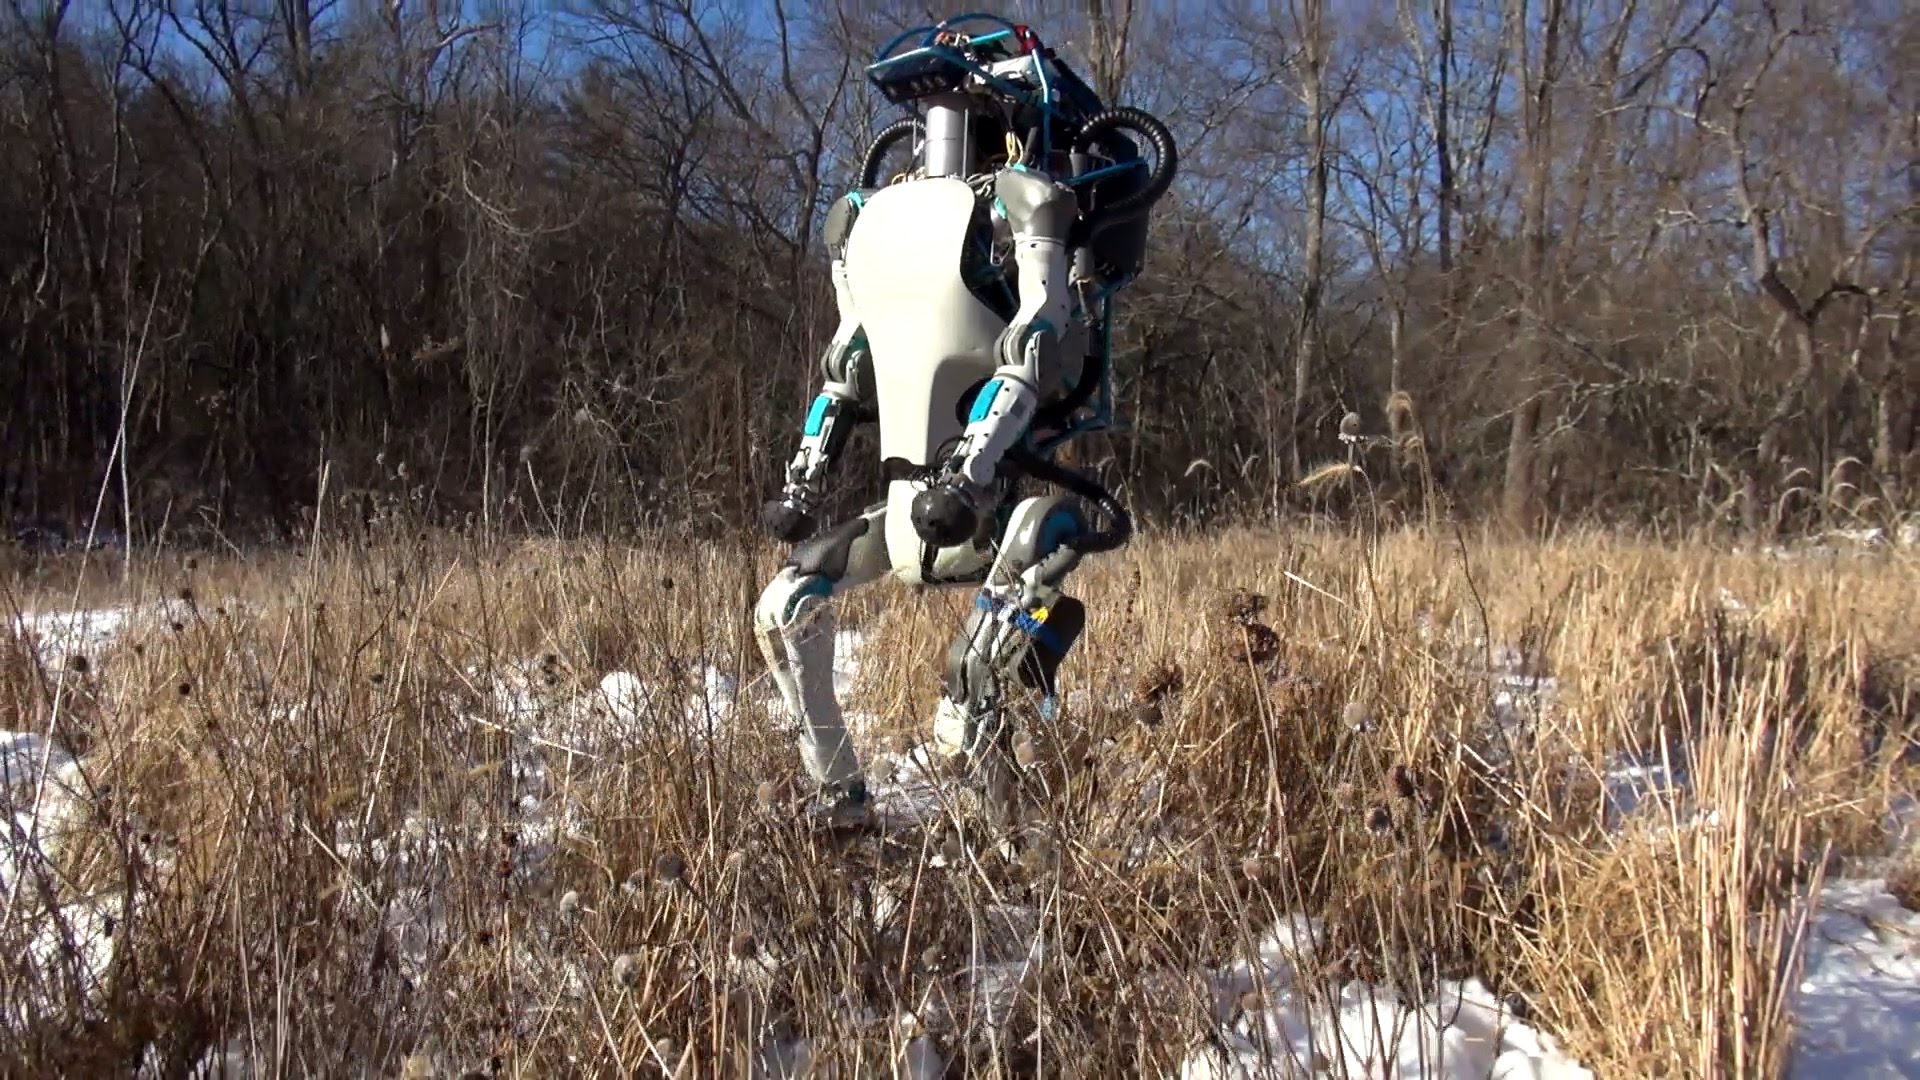 Ce robot a des capacités impressionnantes : quand il tombera au sol, vous comprendrez pourquoi